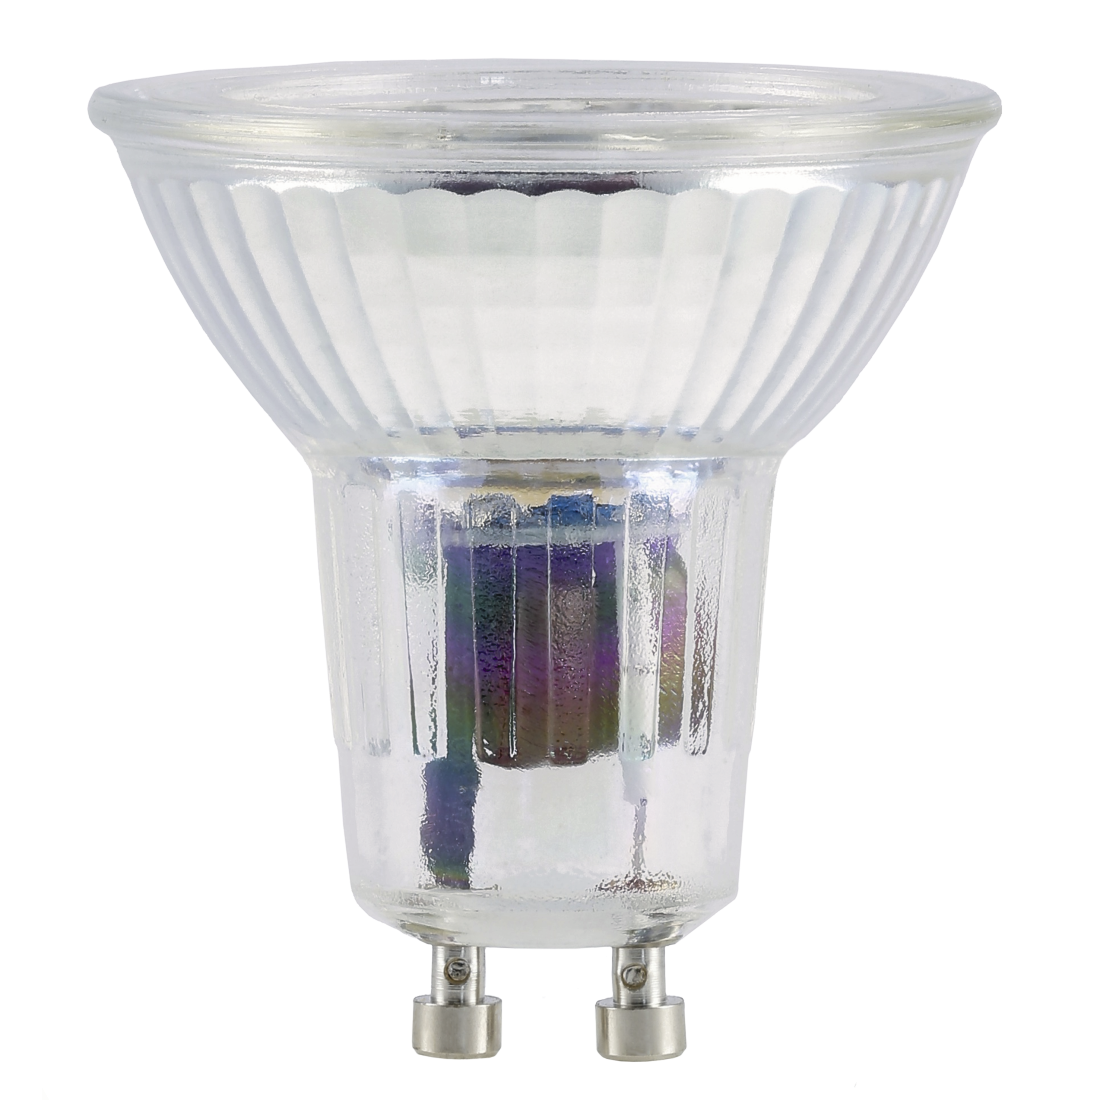 abx High-Res Image - Xavax, Ampoule LED, GU10, 445lm remp. 60W, amp. réfl. PAR16, bl. chd., verre